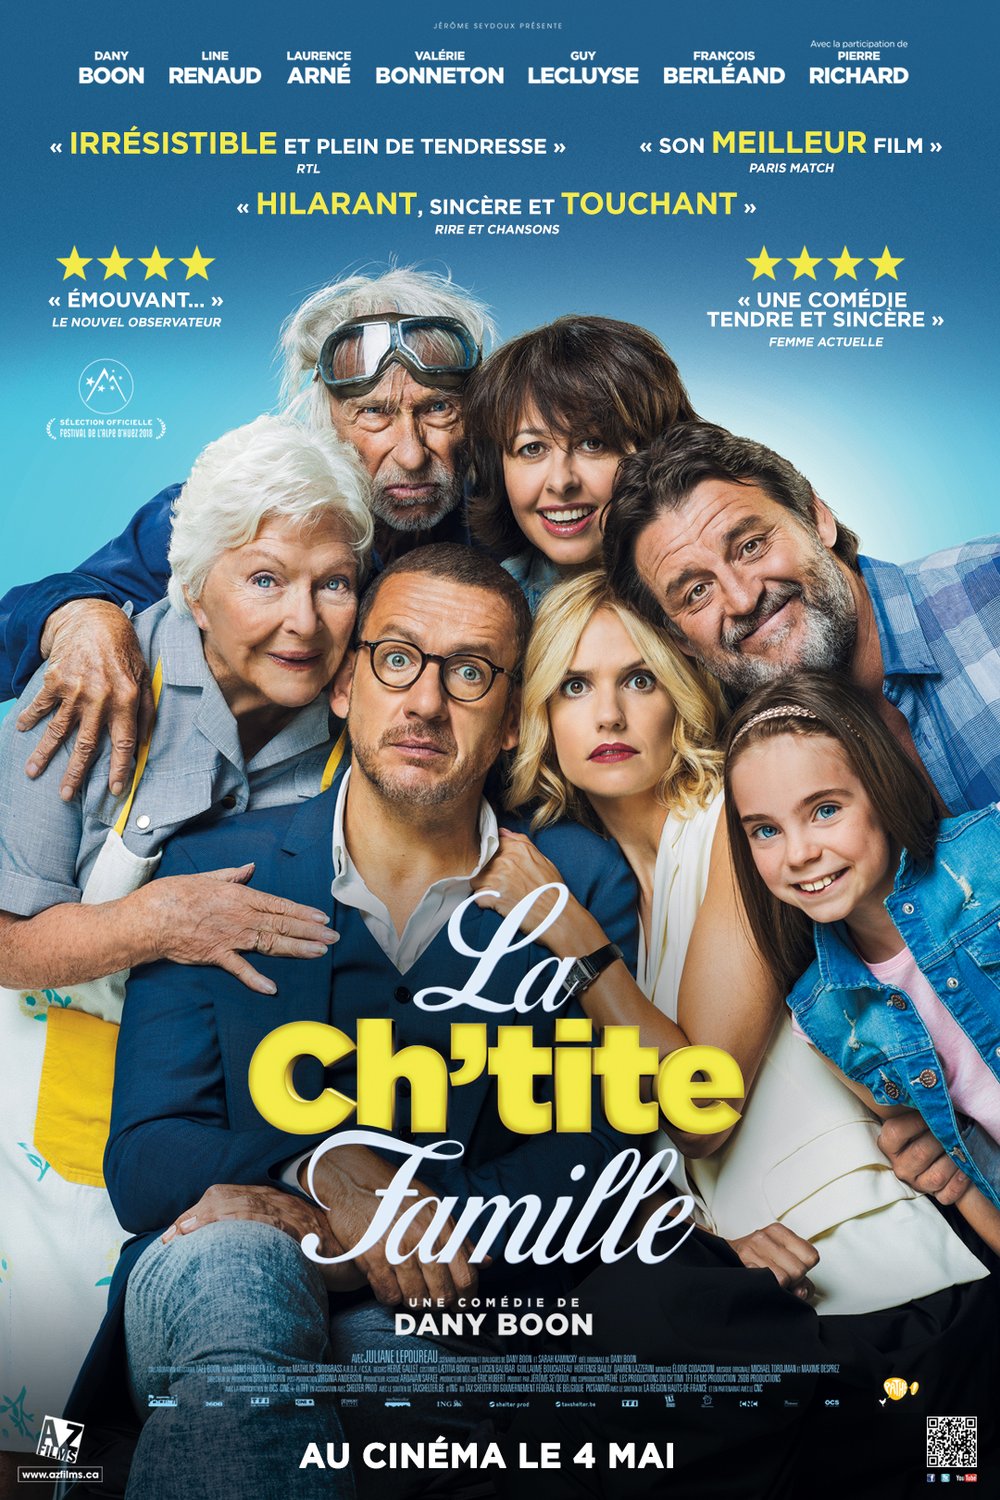 L'affiche du film La Ch'tite famille